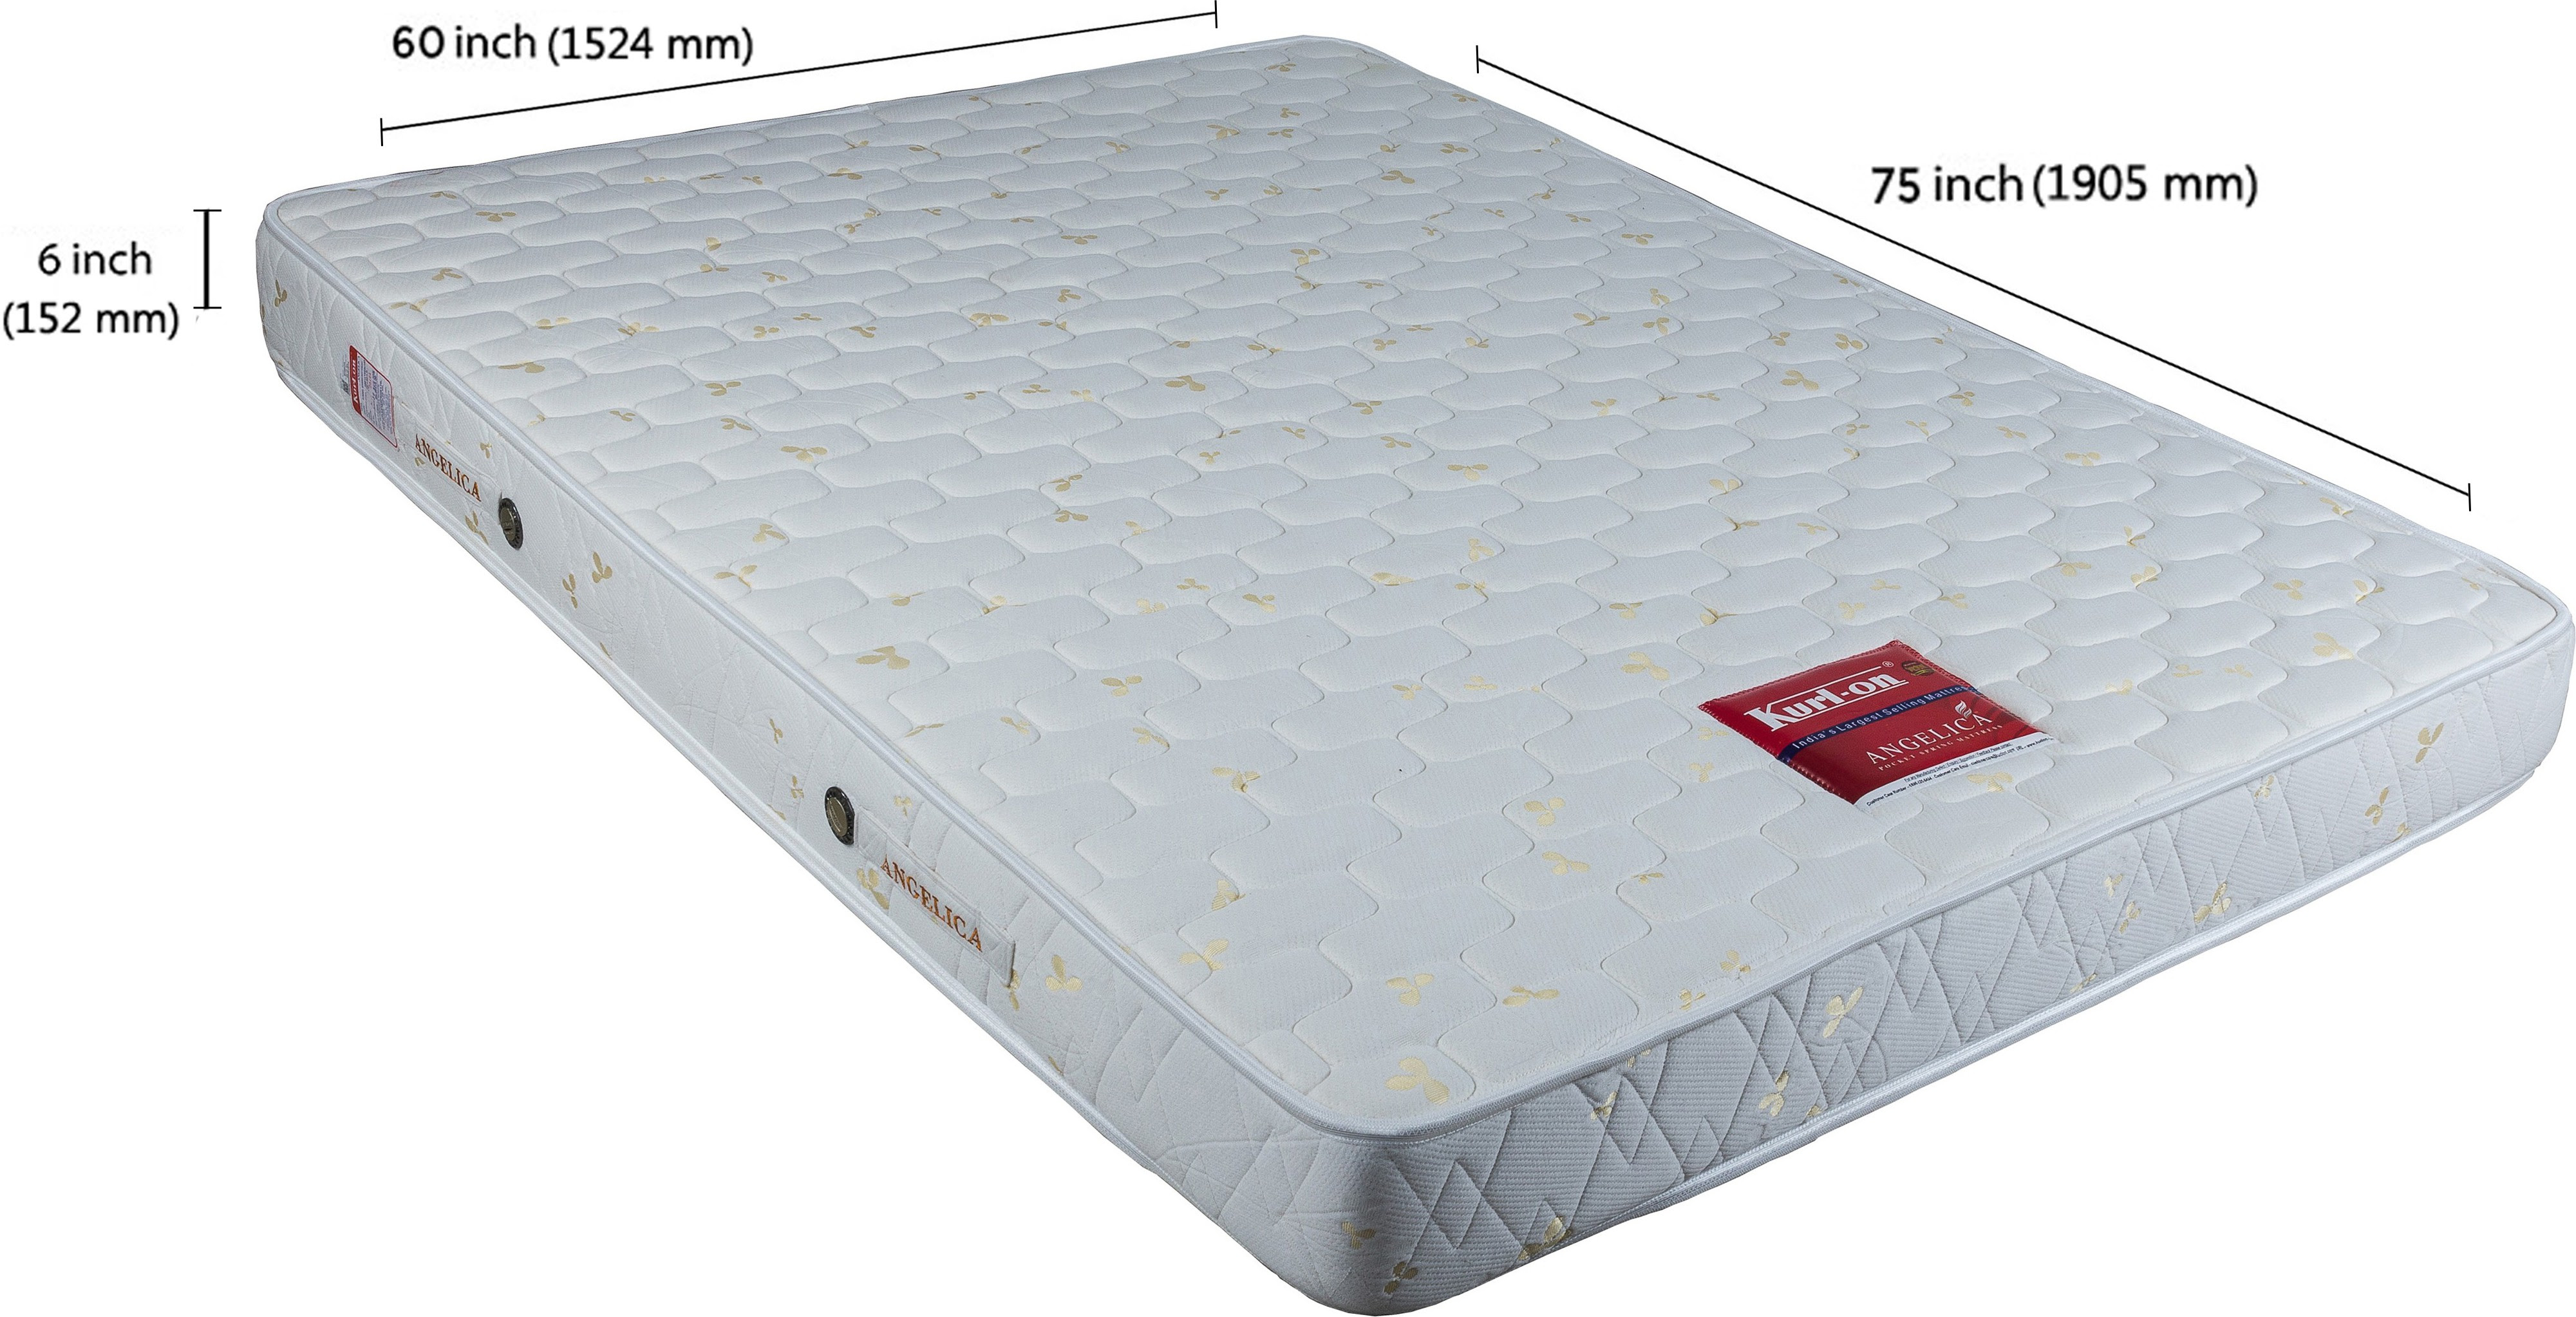 kurlon ever firm mattress price